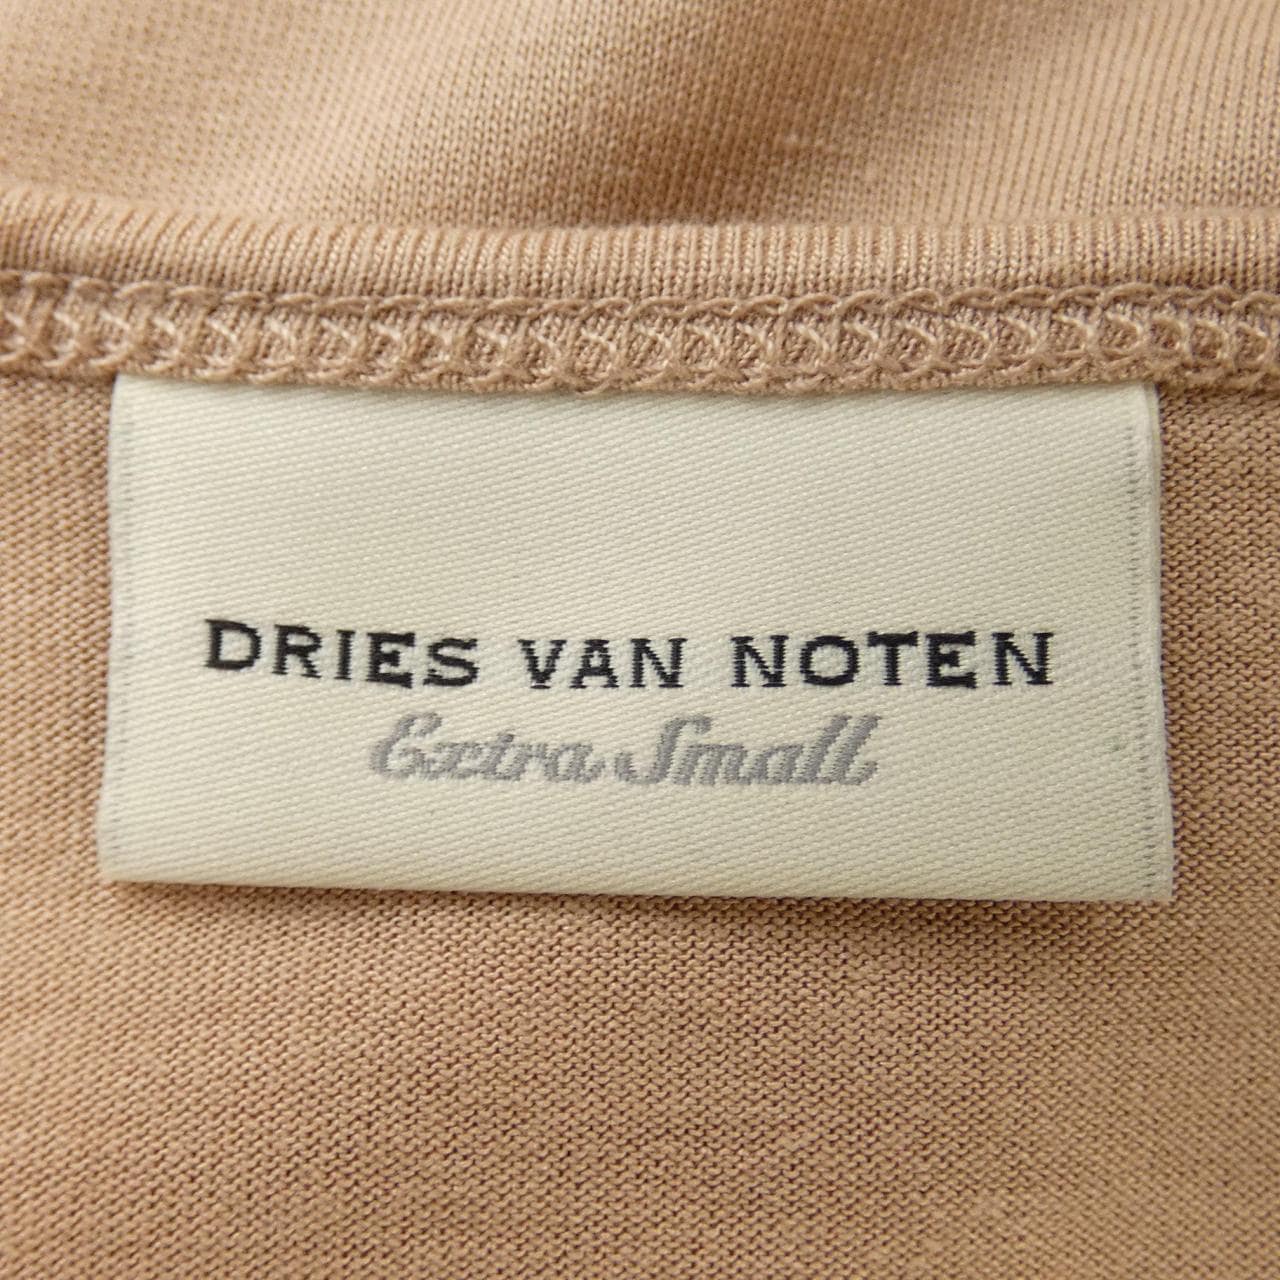 DRIES VAN NOTEN德賴斯·範諾頓 (Dries Van Noten) 上衣